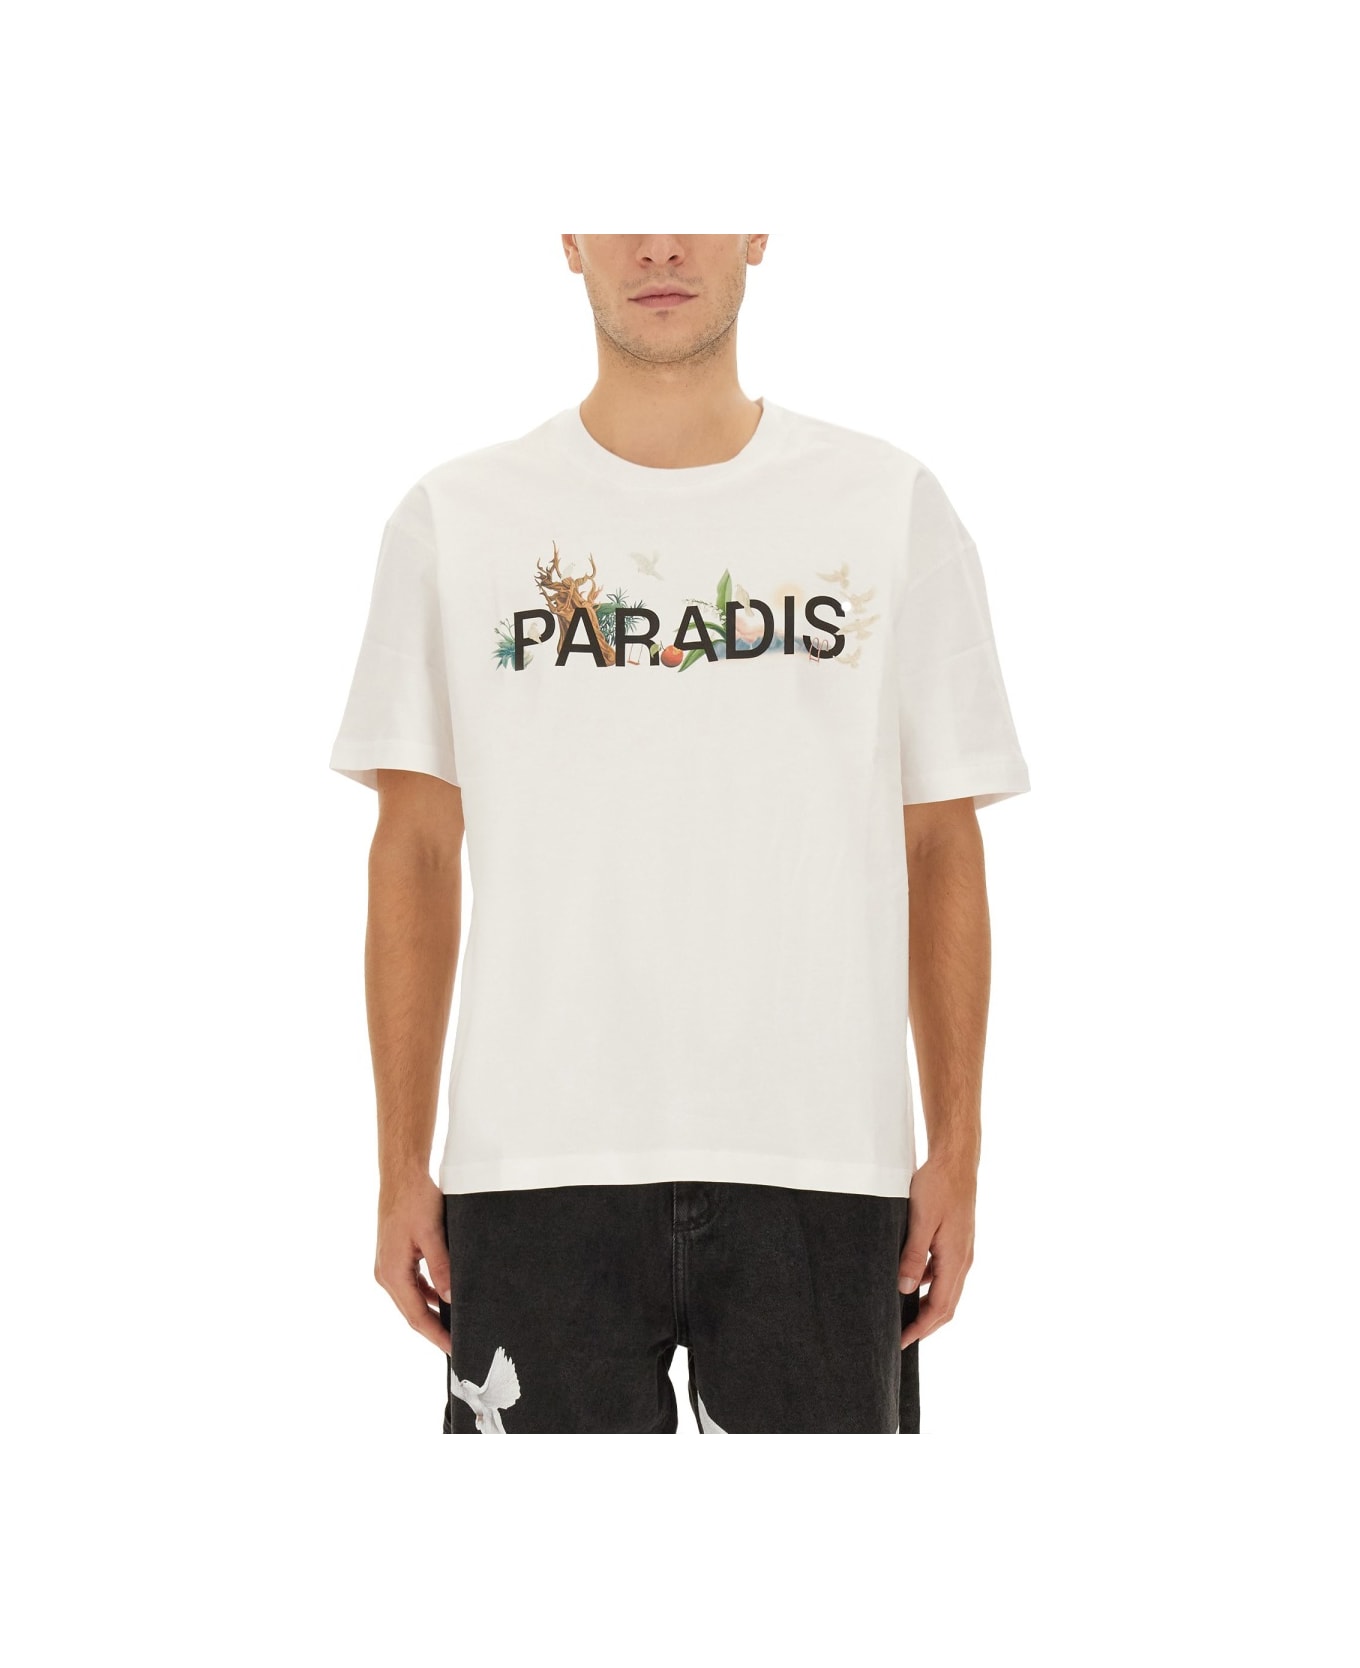 3.Paradis T-shirt With Logo - WHITE